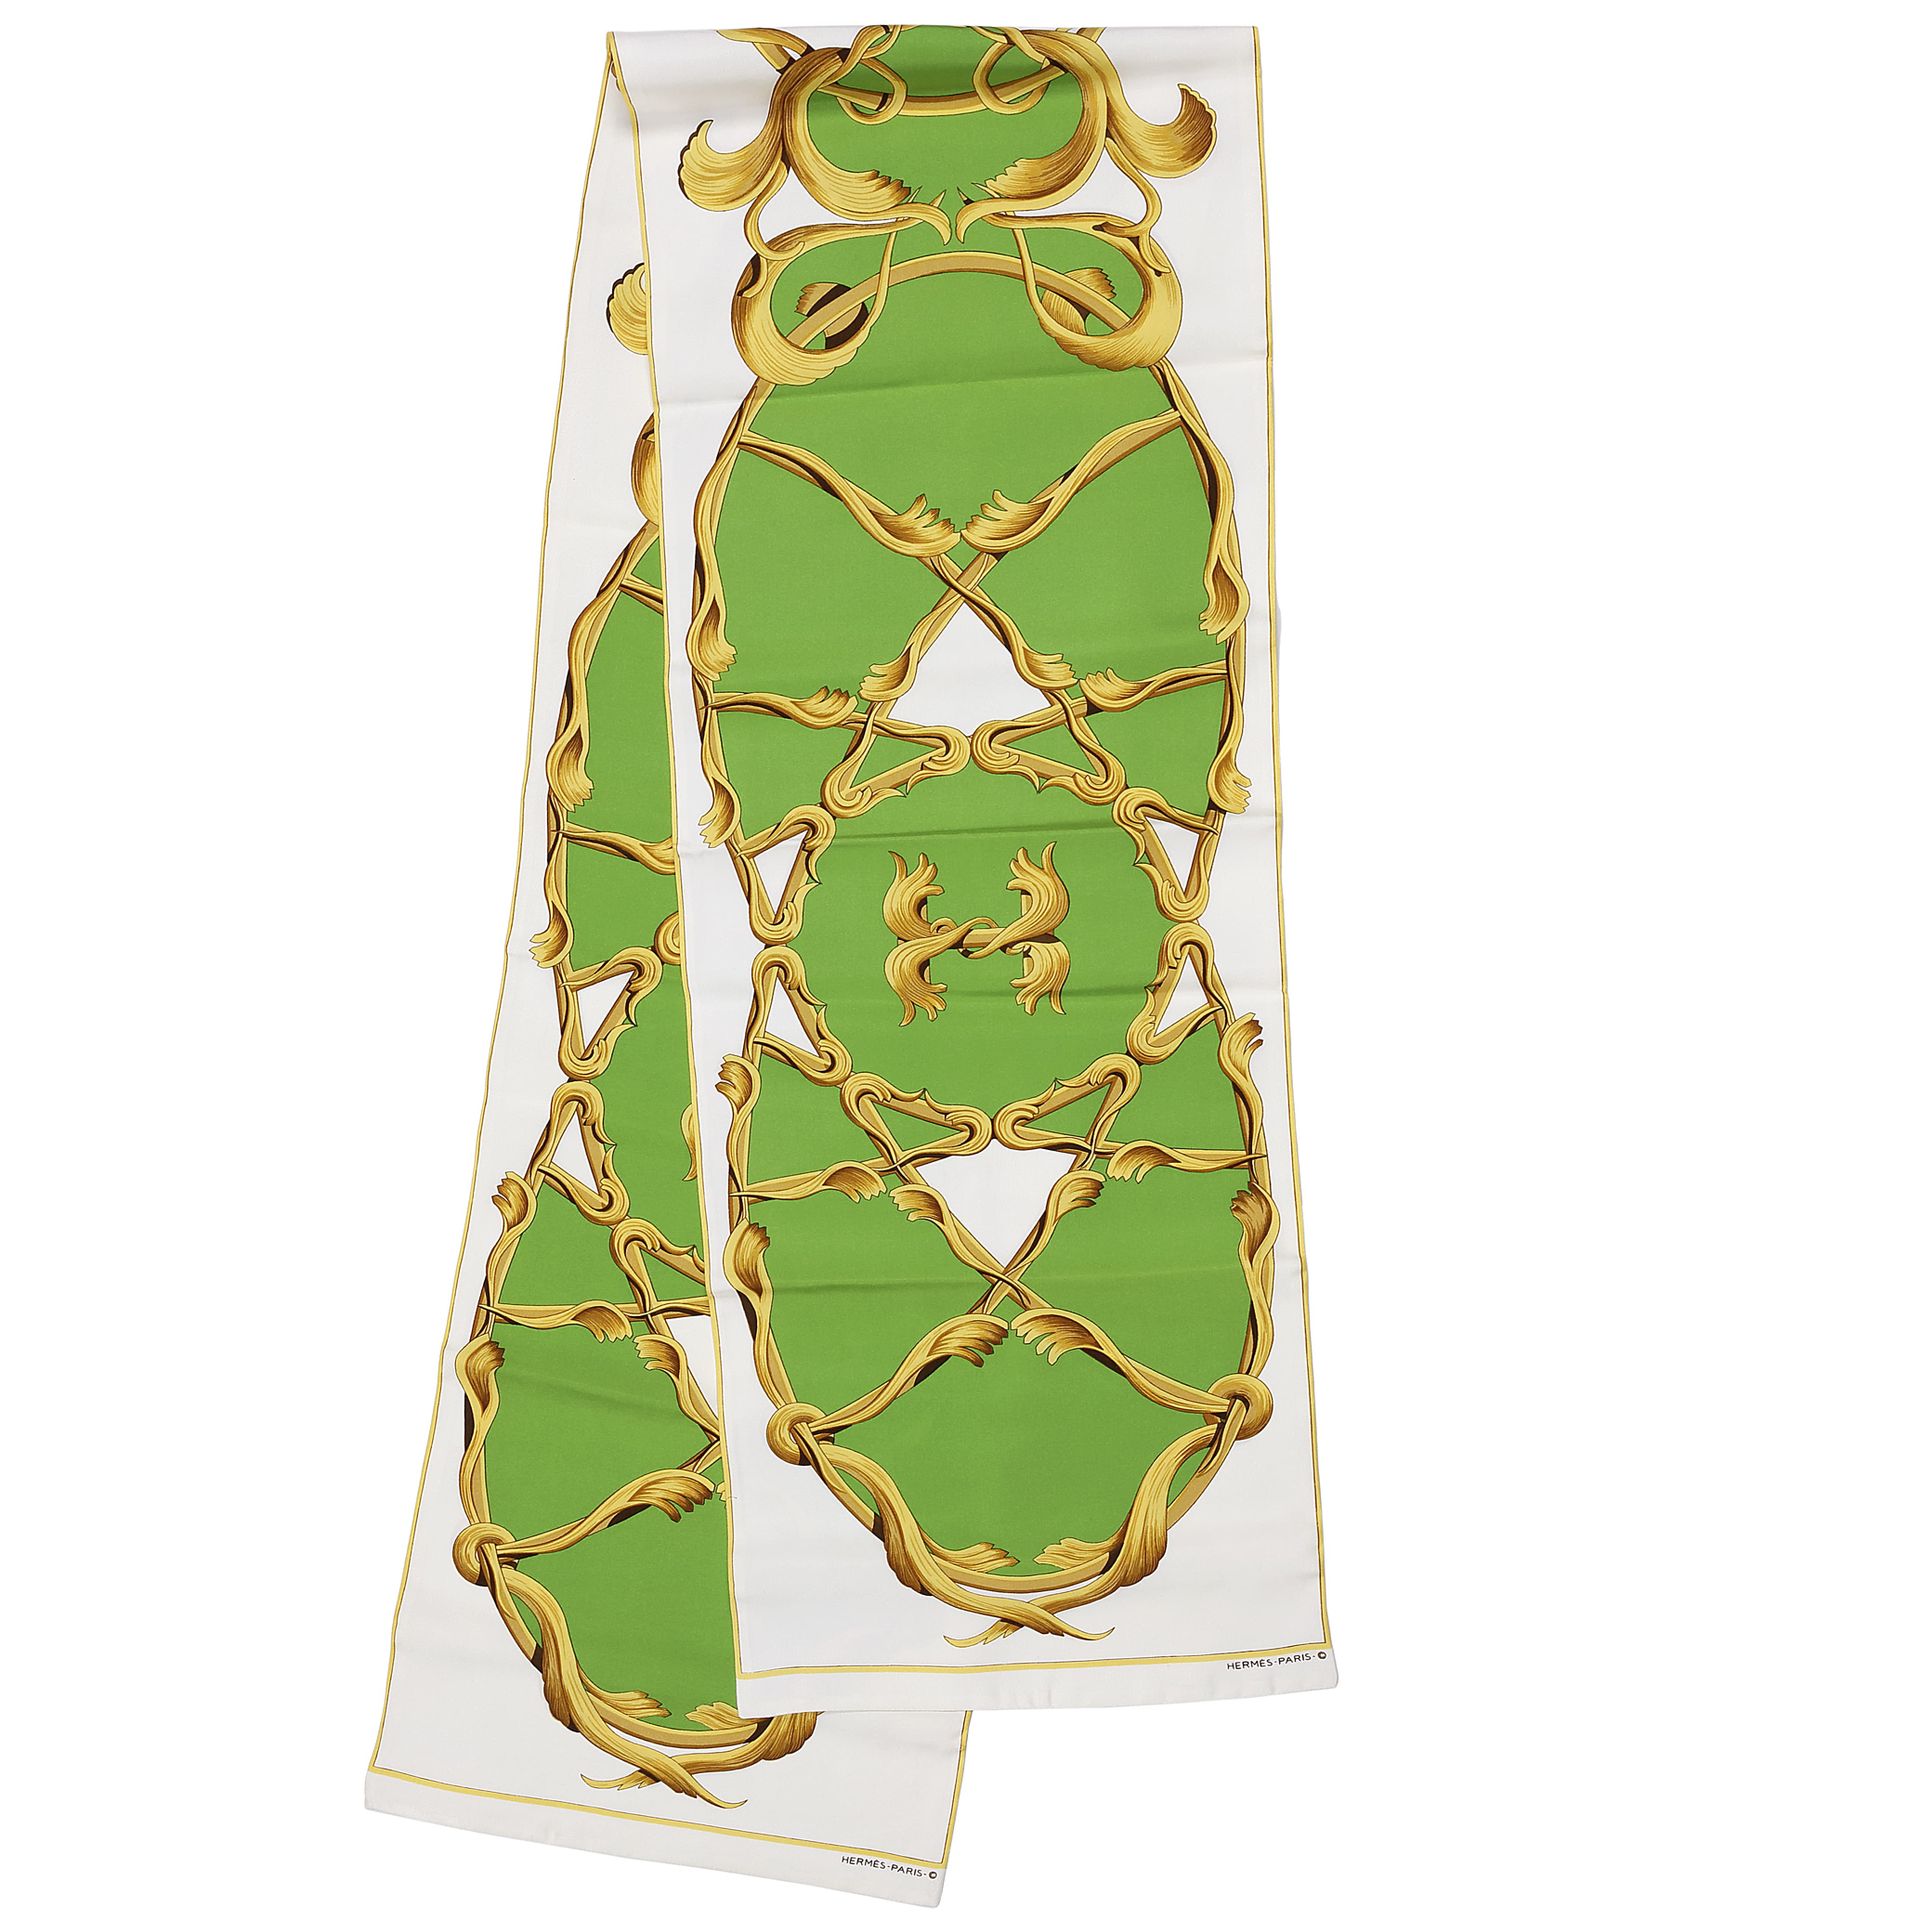 Null 巴黎爱马仕公司、
乳白色和绿色背景的丝绸斜纹围巾，有交错的图案
有盒子
状况良好（非常轻微的污渍）
30 x 186厘米